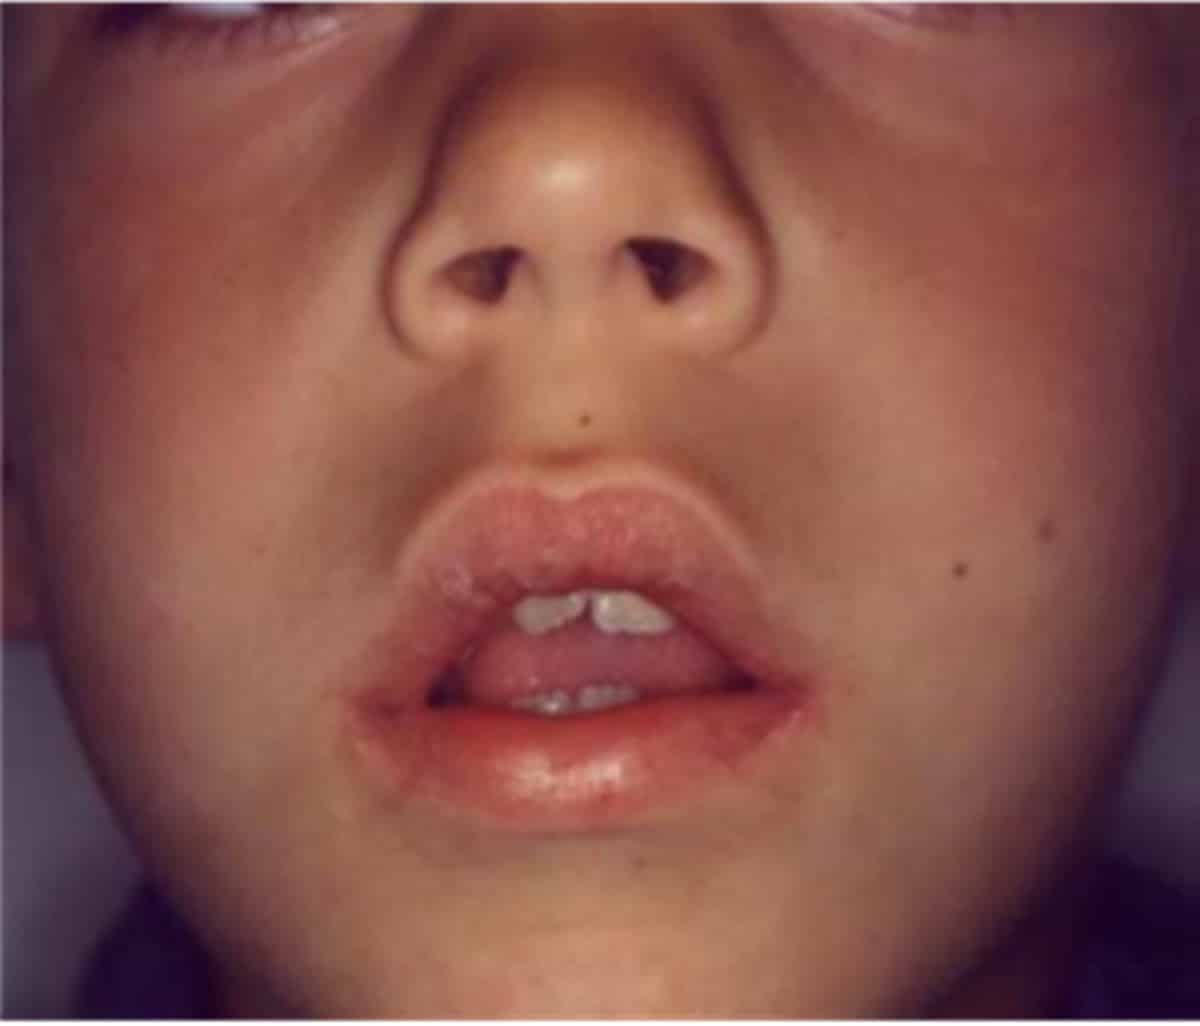 La respiración bucal determina deformaciones anatómicas